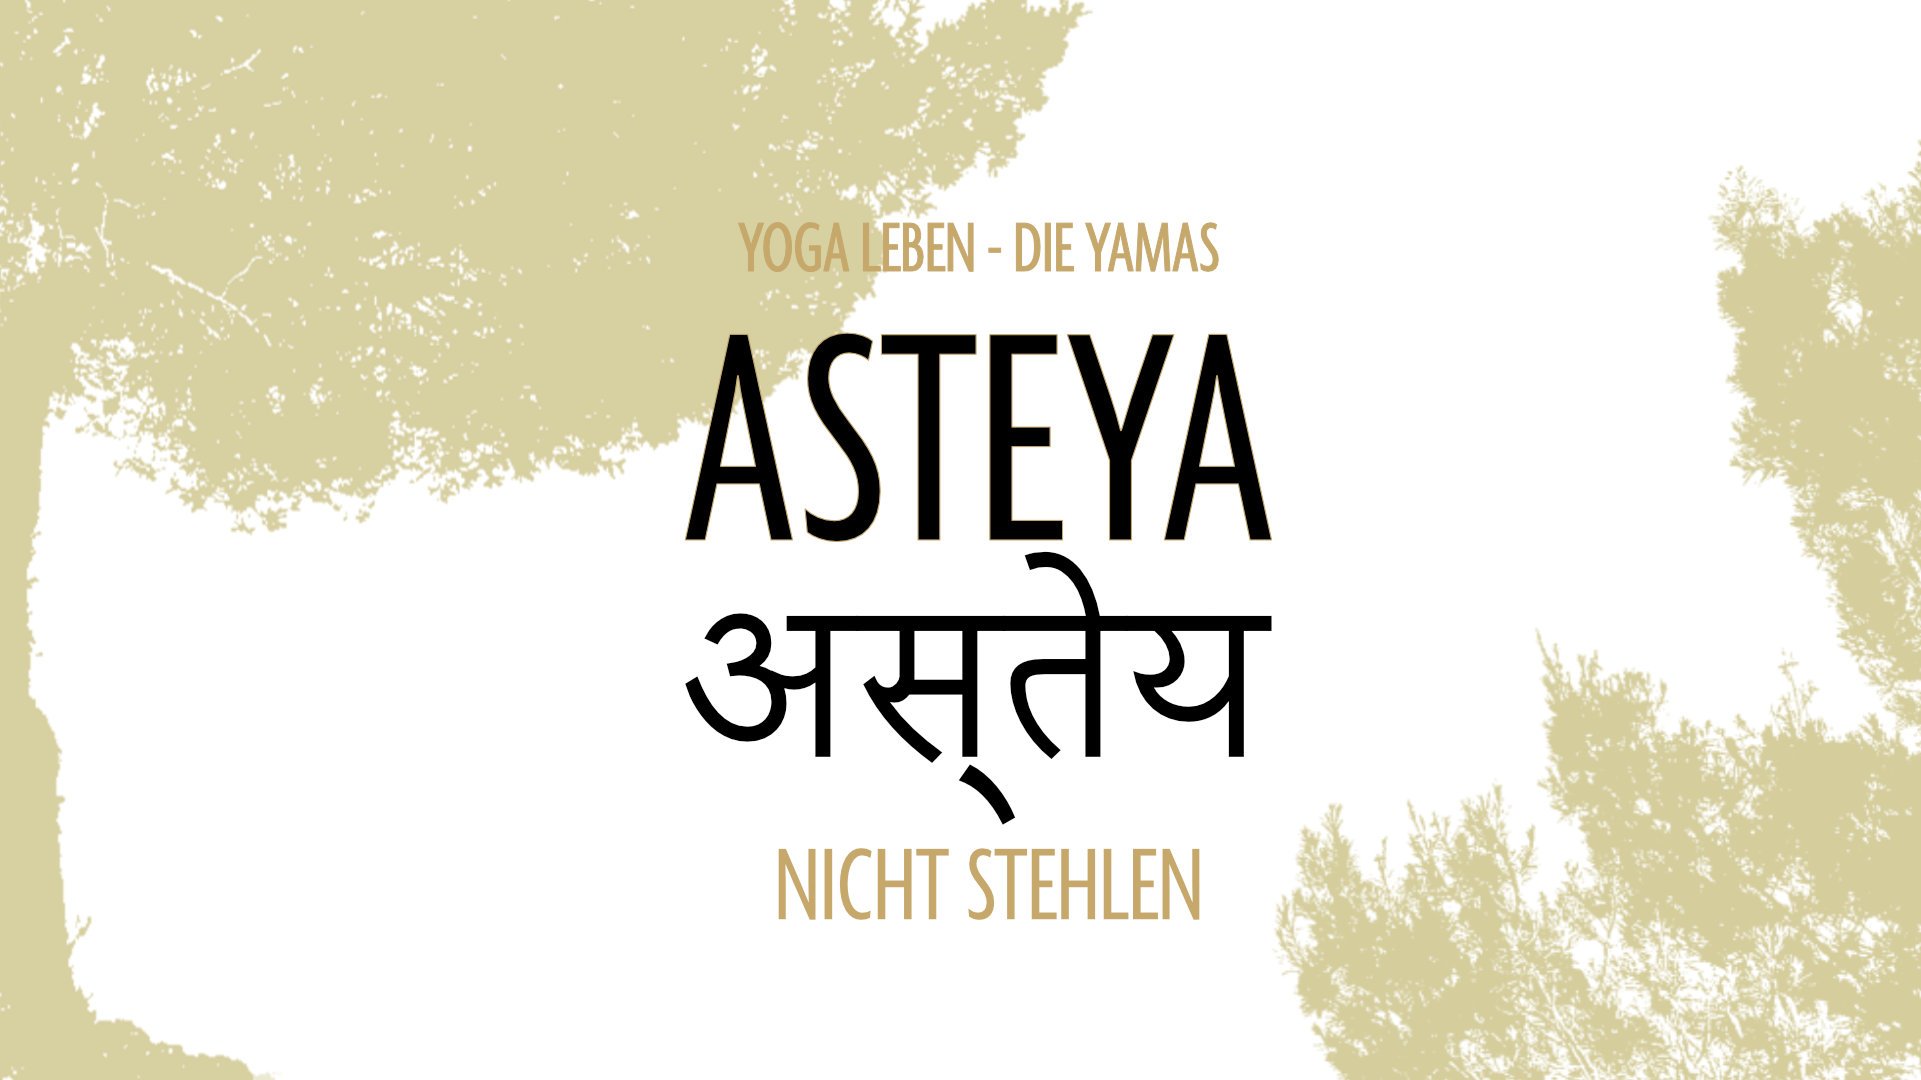 imme kock yoga die yamas workshop asteya.jpg